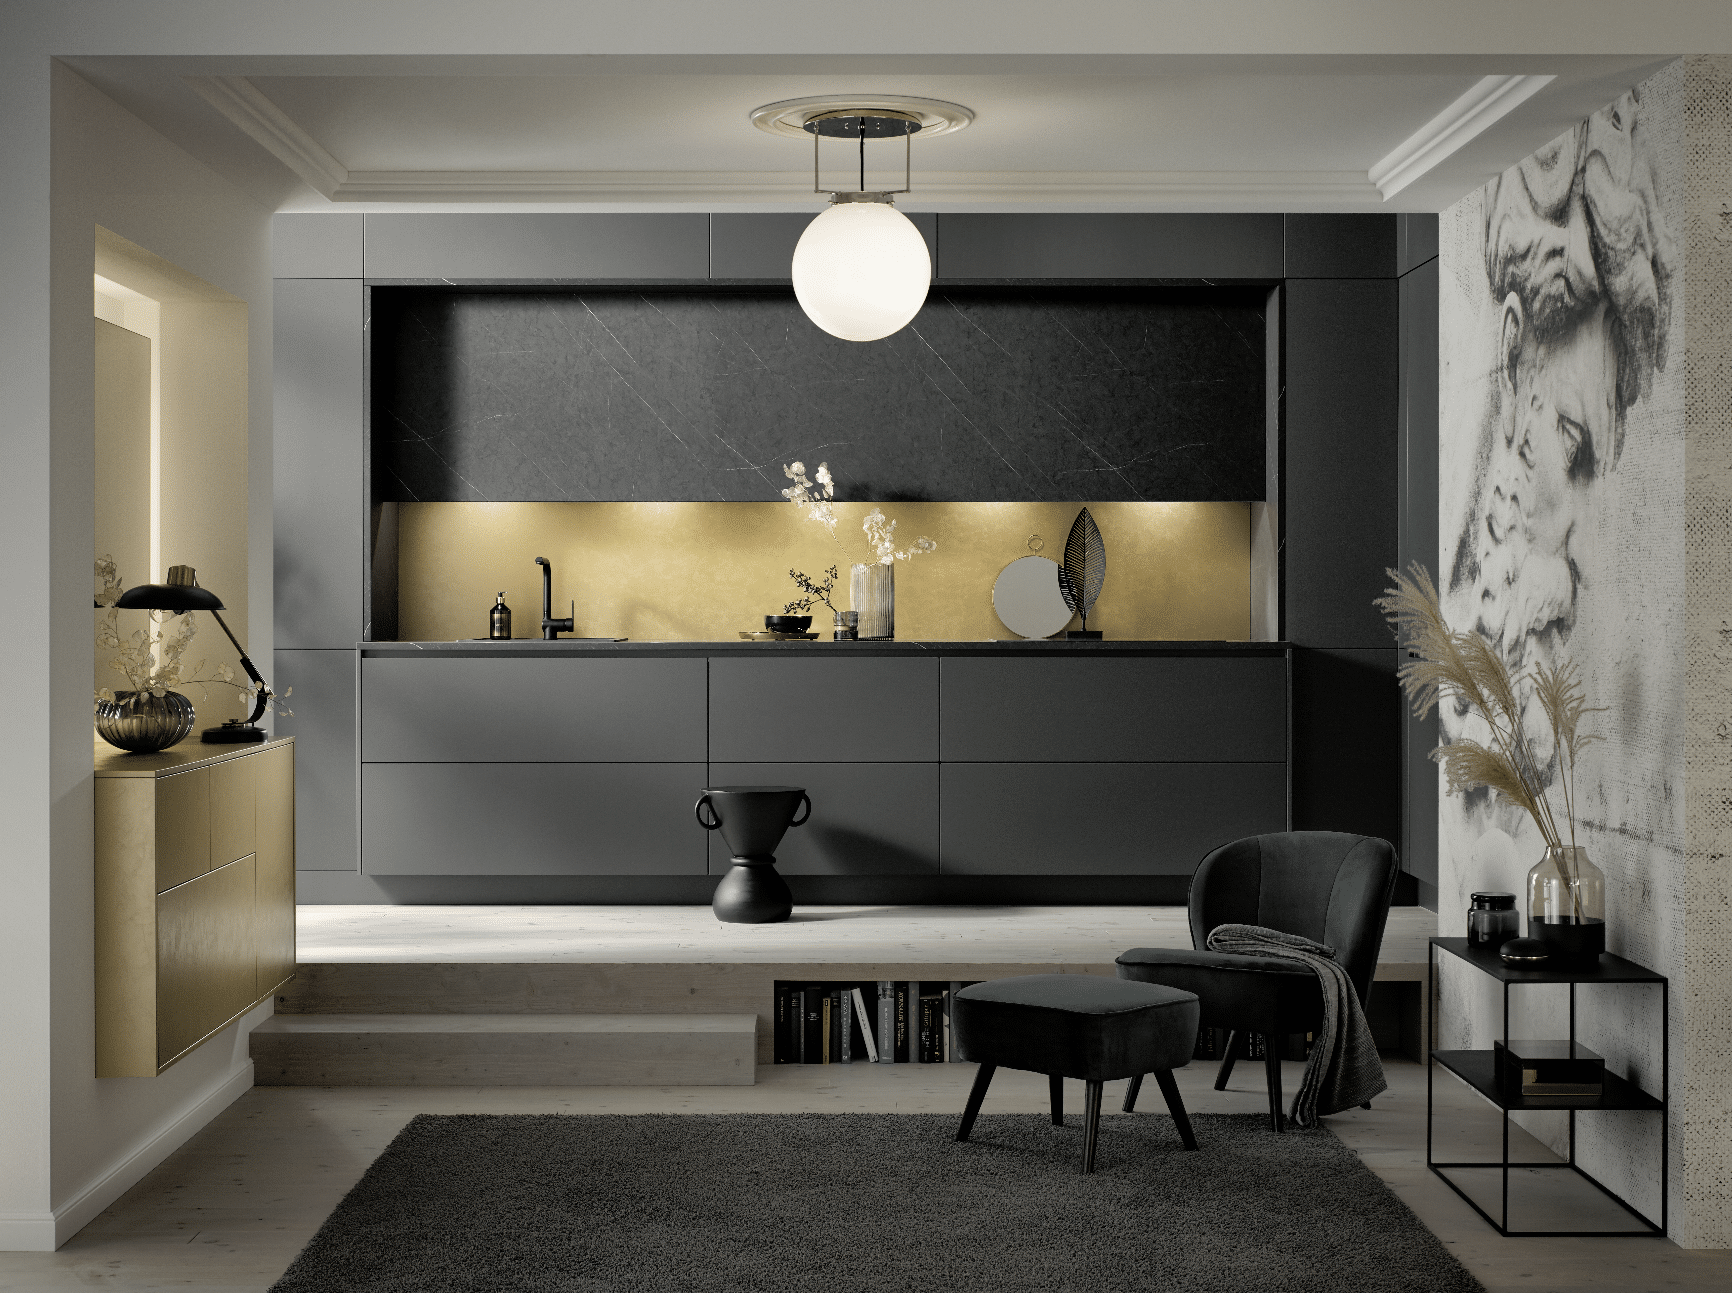 Tischlerei Bauer zeigt eine minimalistische Einbauküche mit grau-matten Fronten von Häcker Küchen.